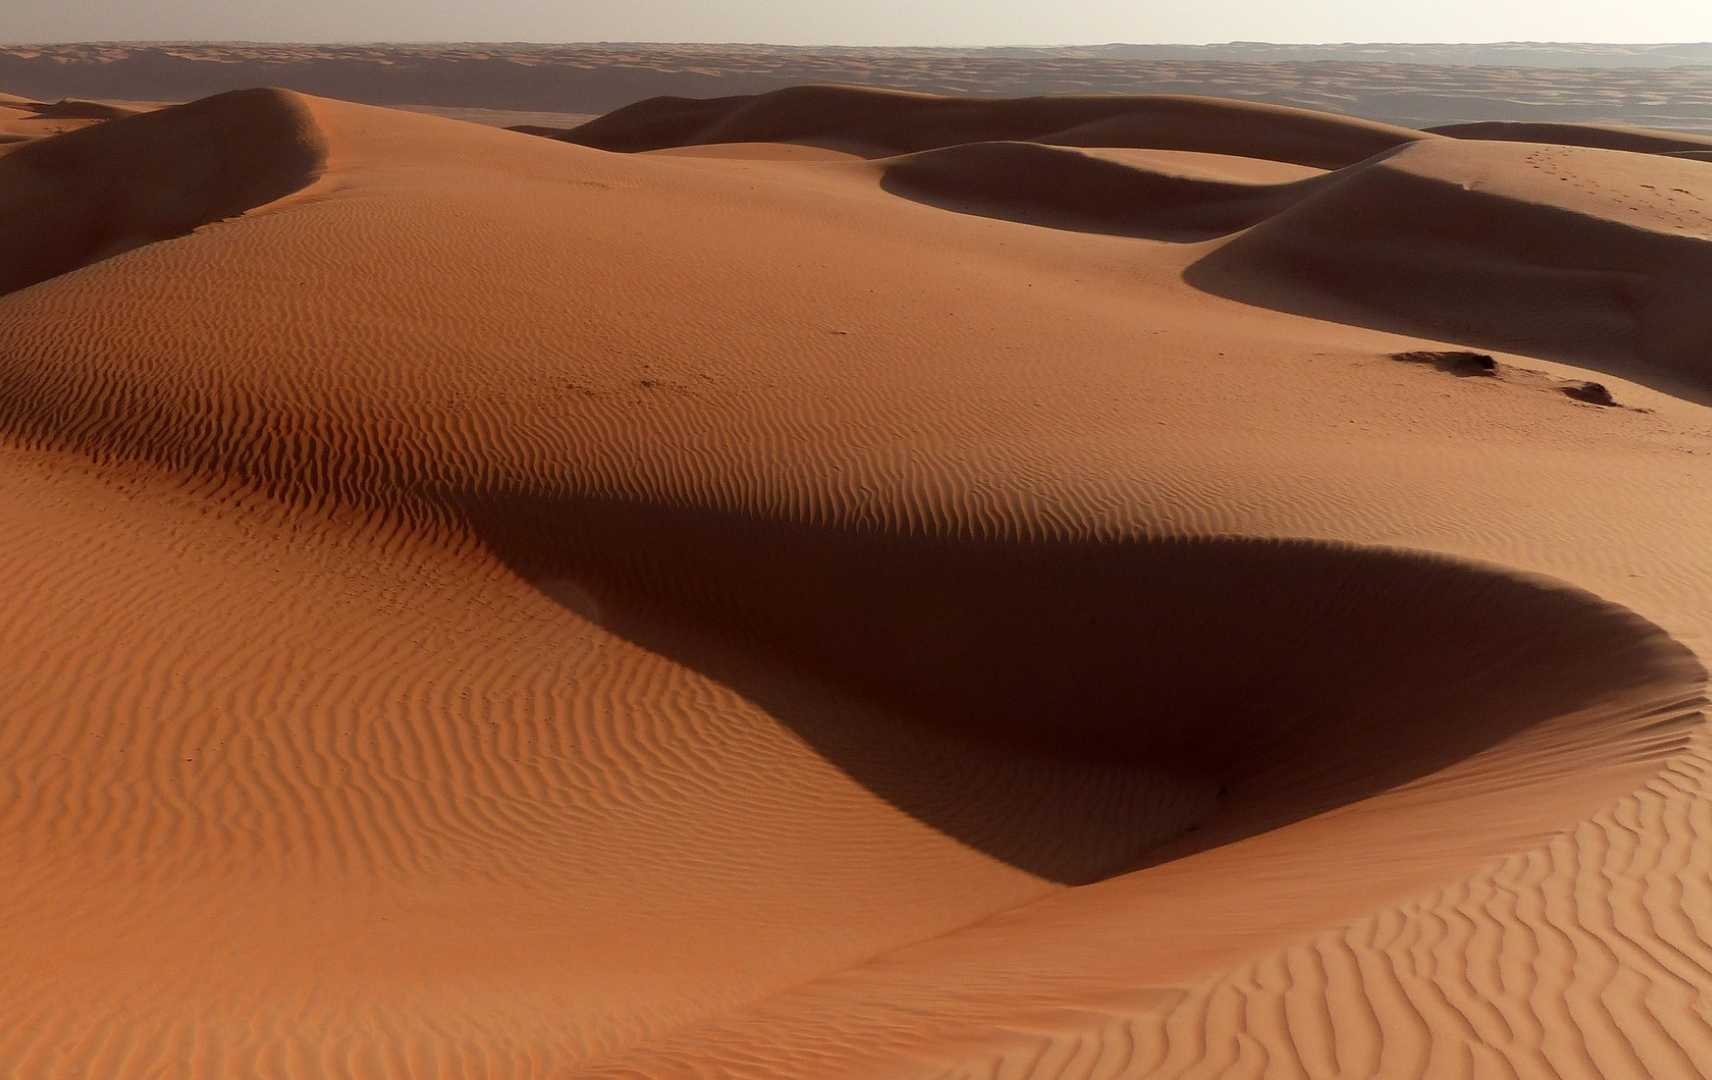 Wüste in Saudi Arabien